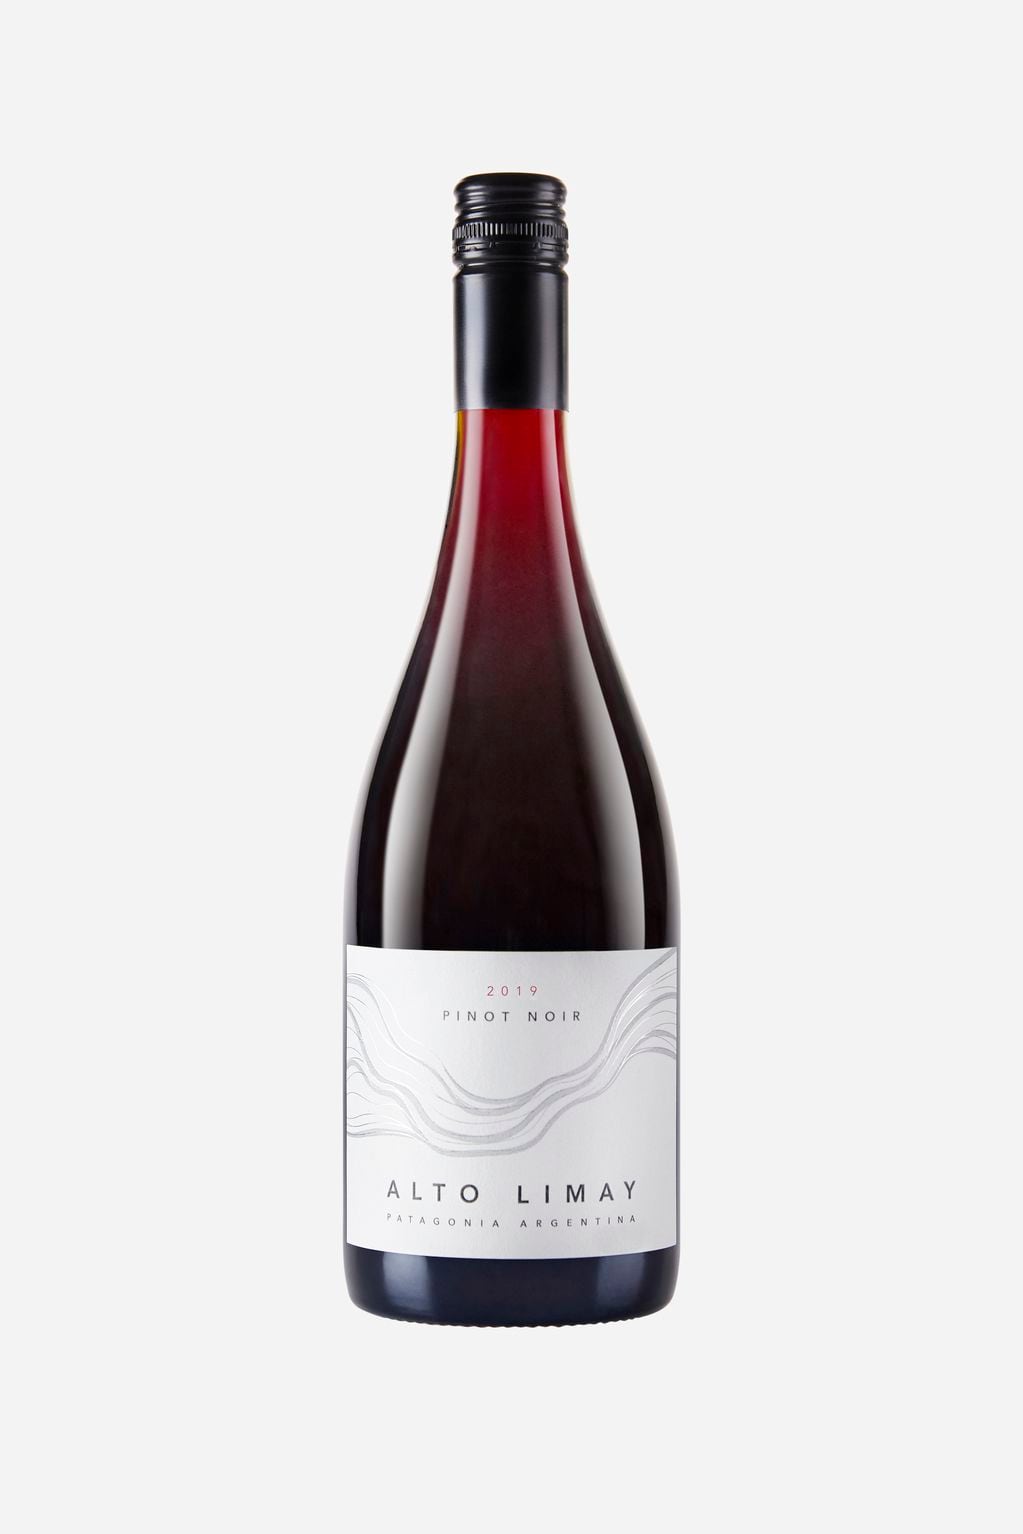 Alto Limay fue calificado como el mejor Pinot Noir del país y uno de los 10 mejores del mundo. - Gentileza